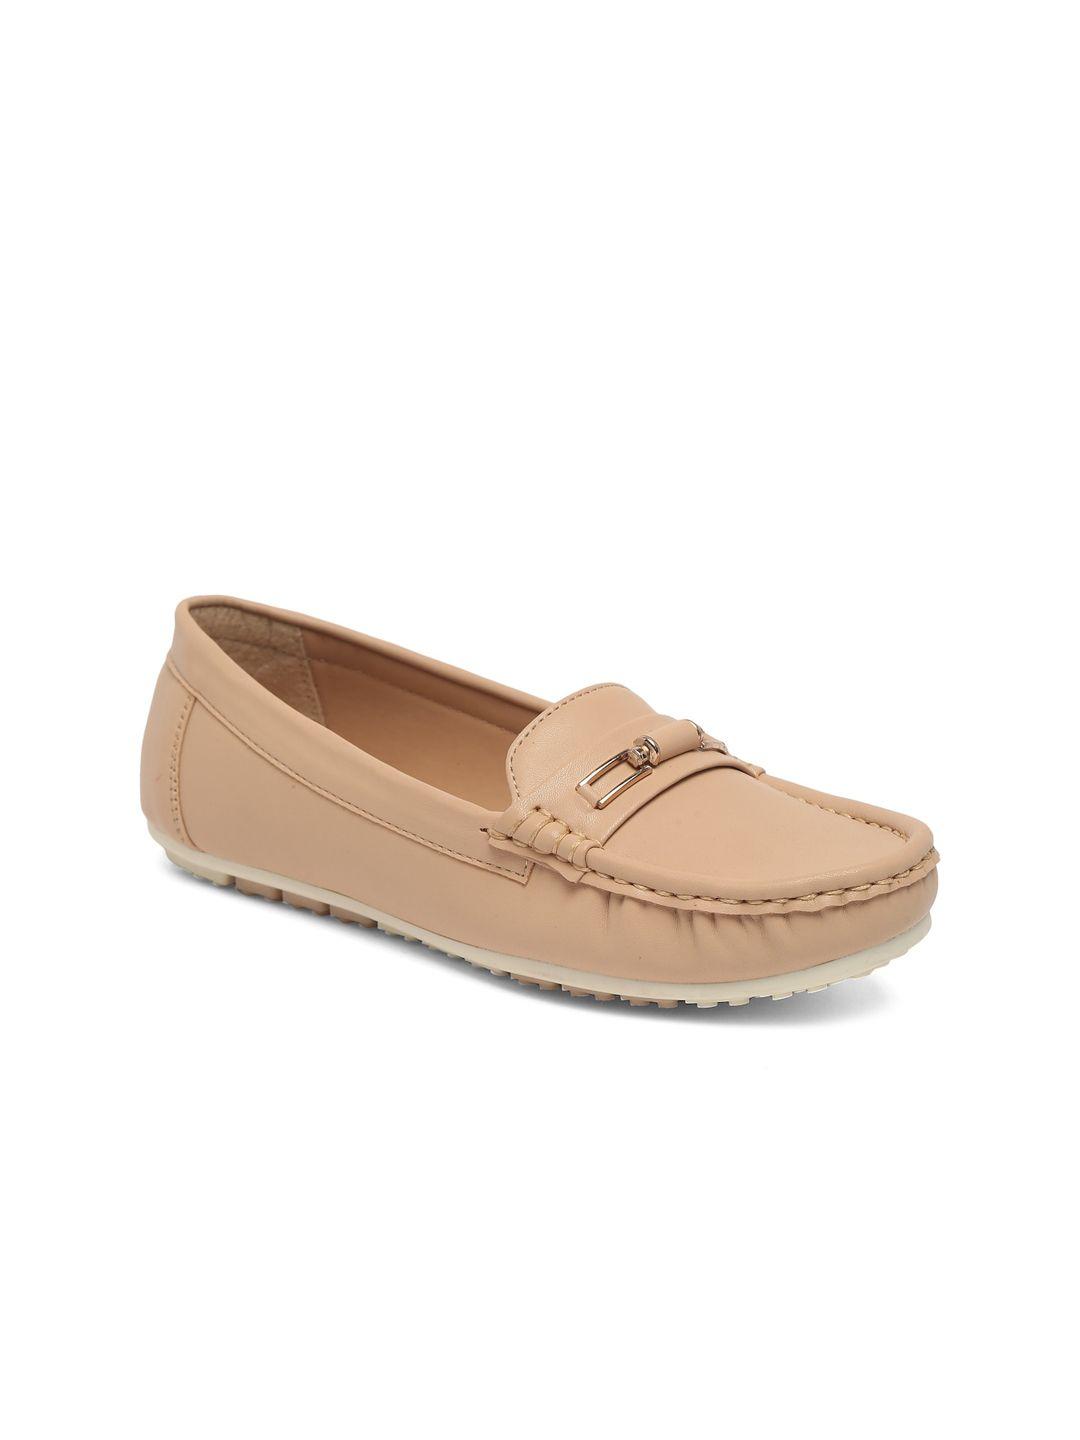 flat-n-heels-women-beige-casual-loafers